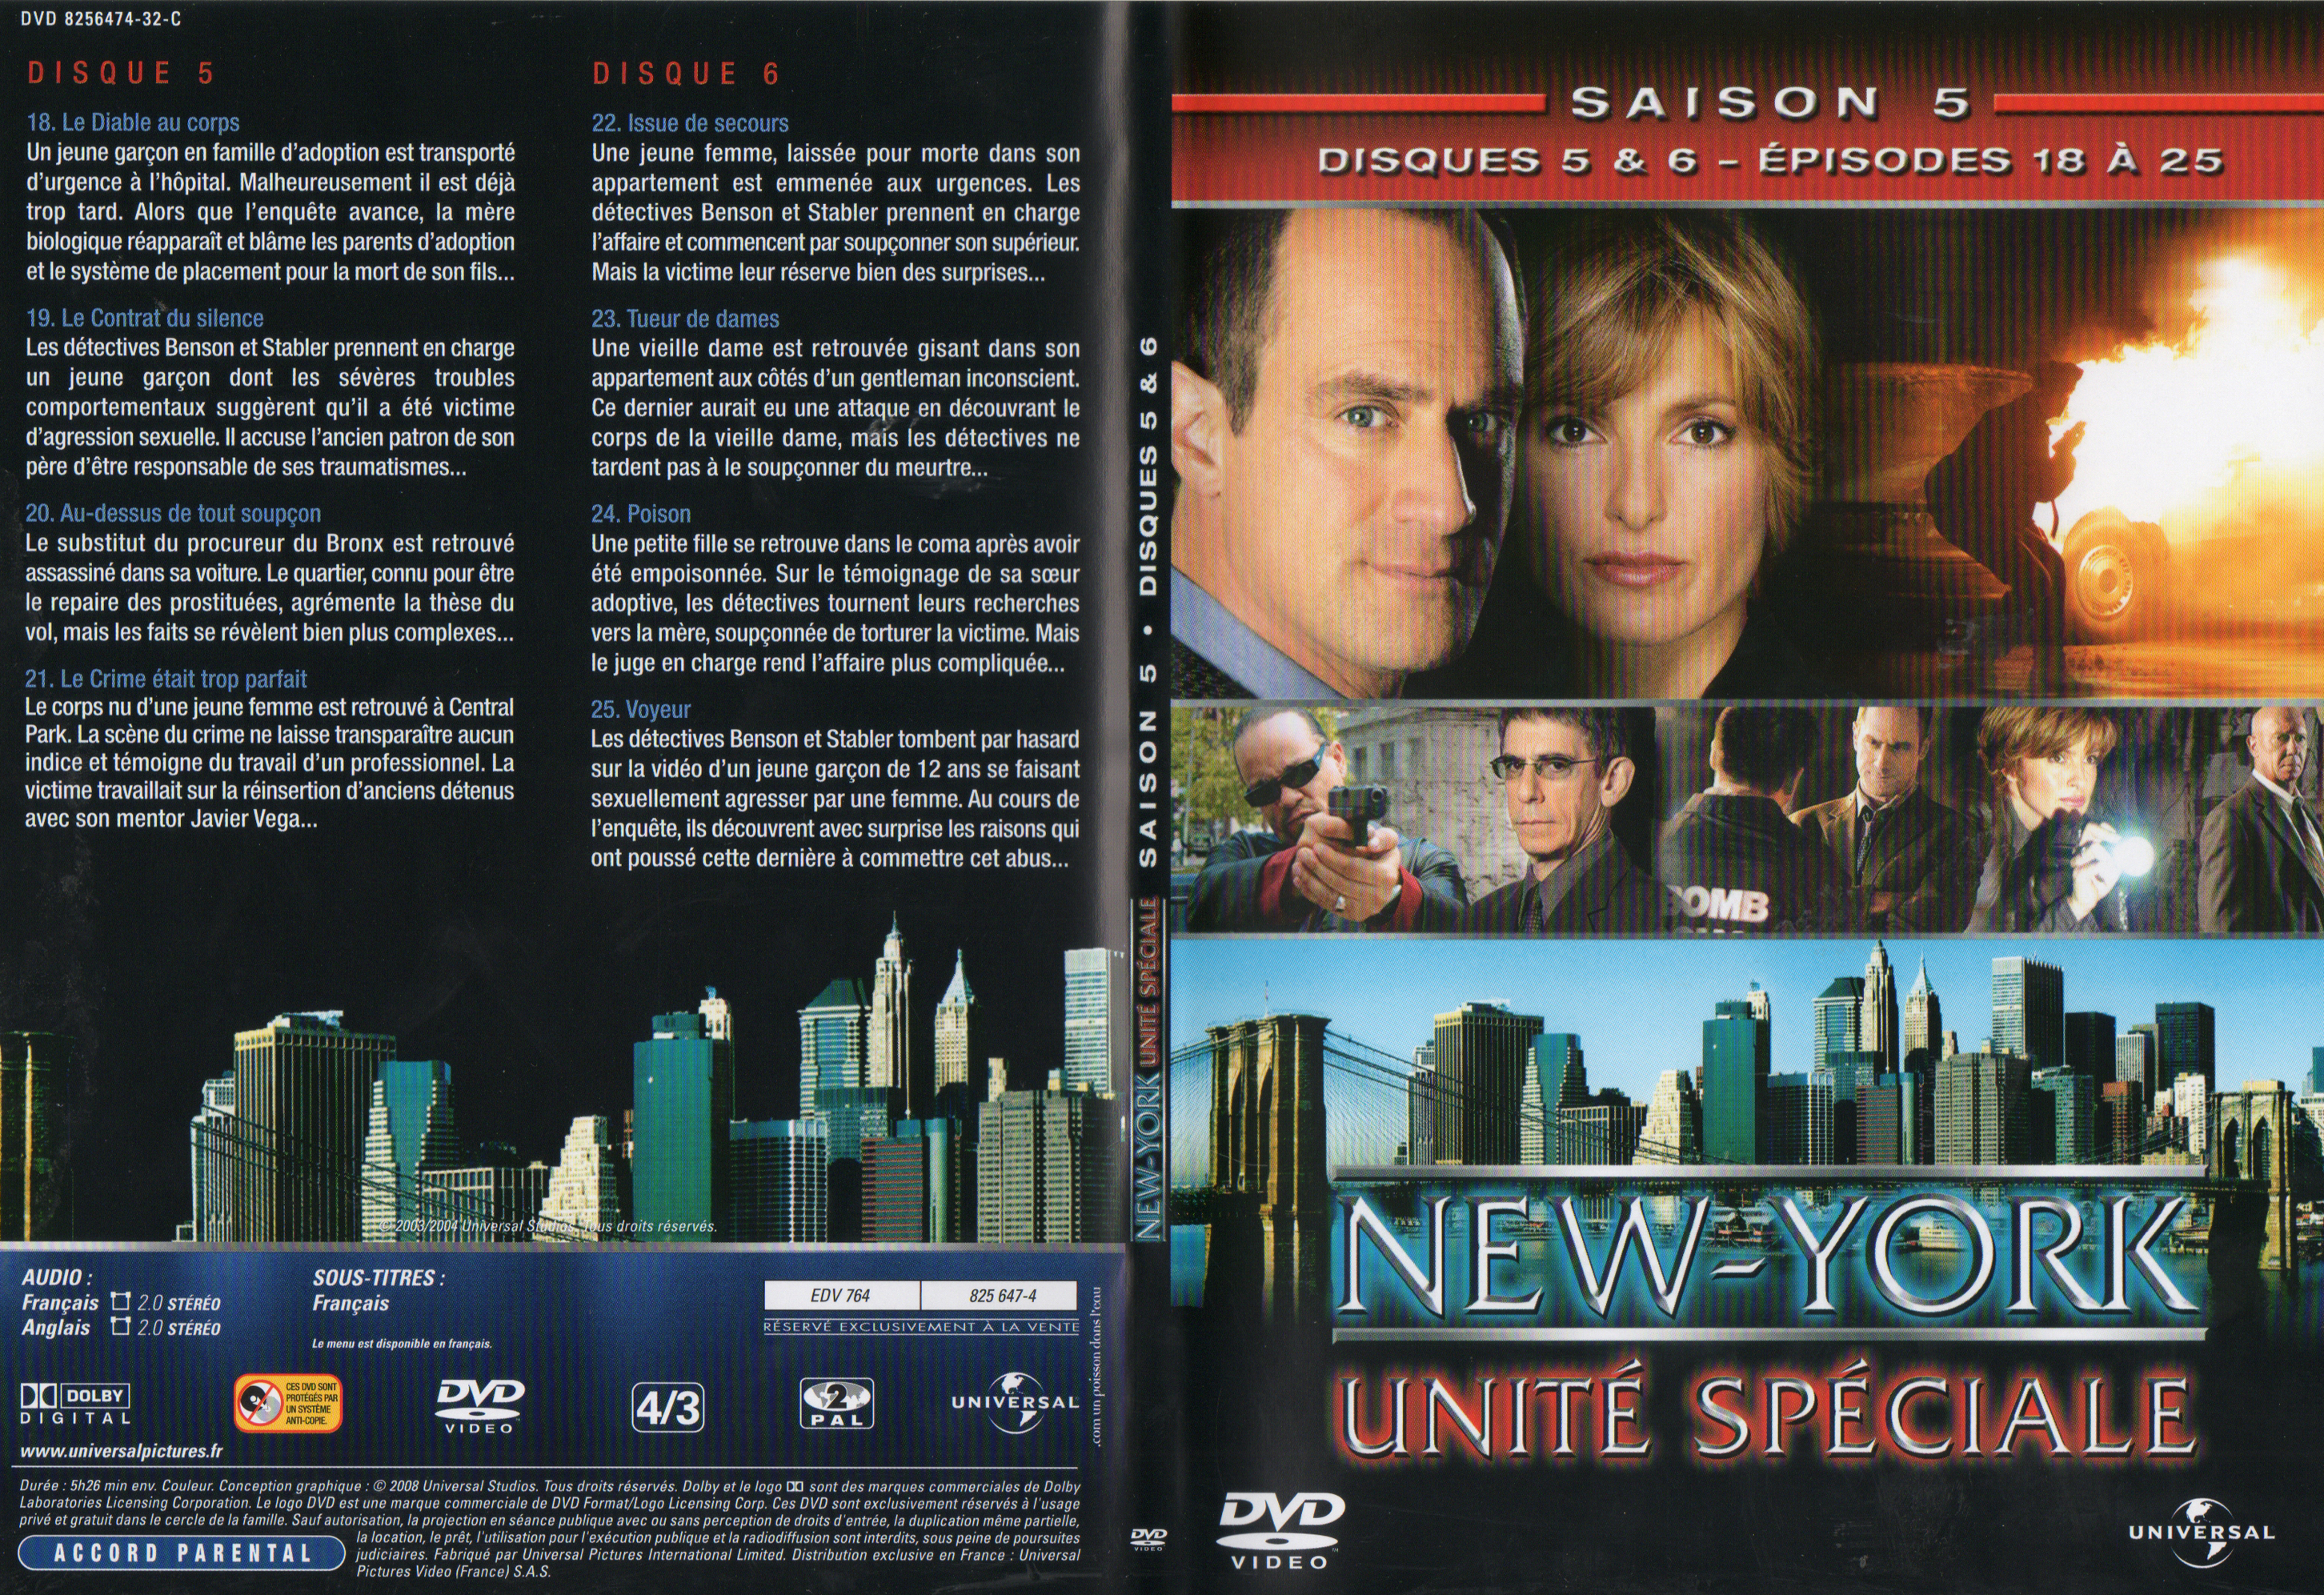 Jaquette DVD New York unit spciale saison 5 DVD 3